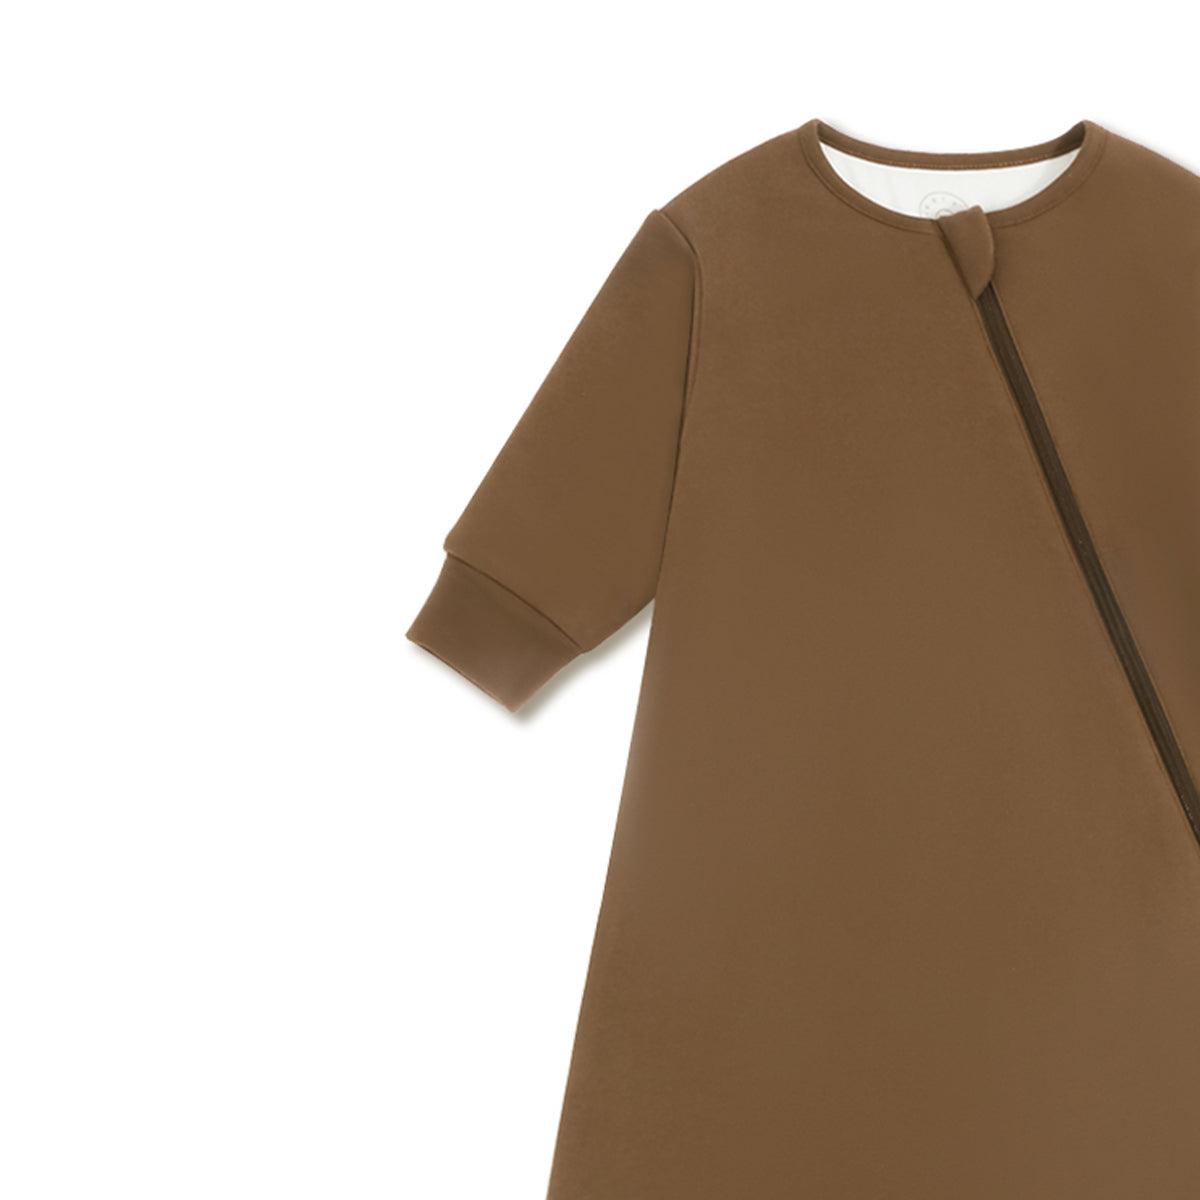 Zip Sleep Sack With Sleeves 2.5 TOG Custom Embroidery - Rawhide Brown